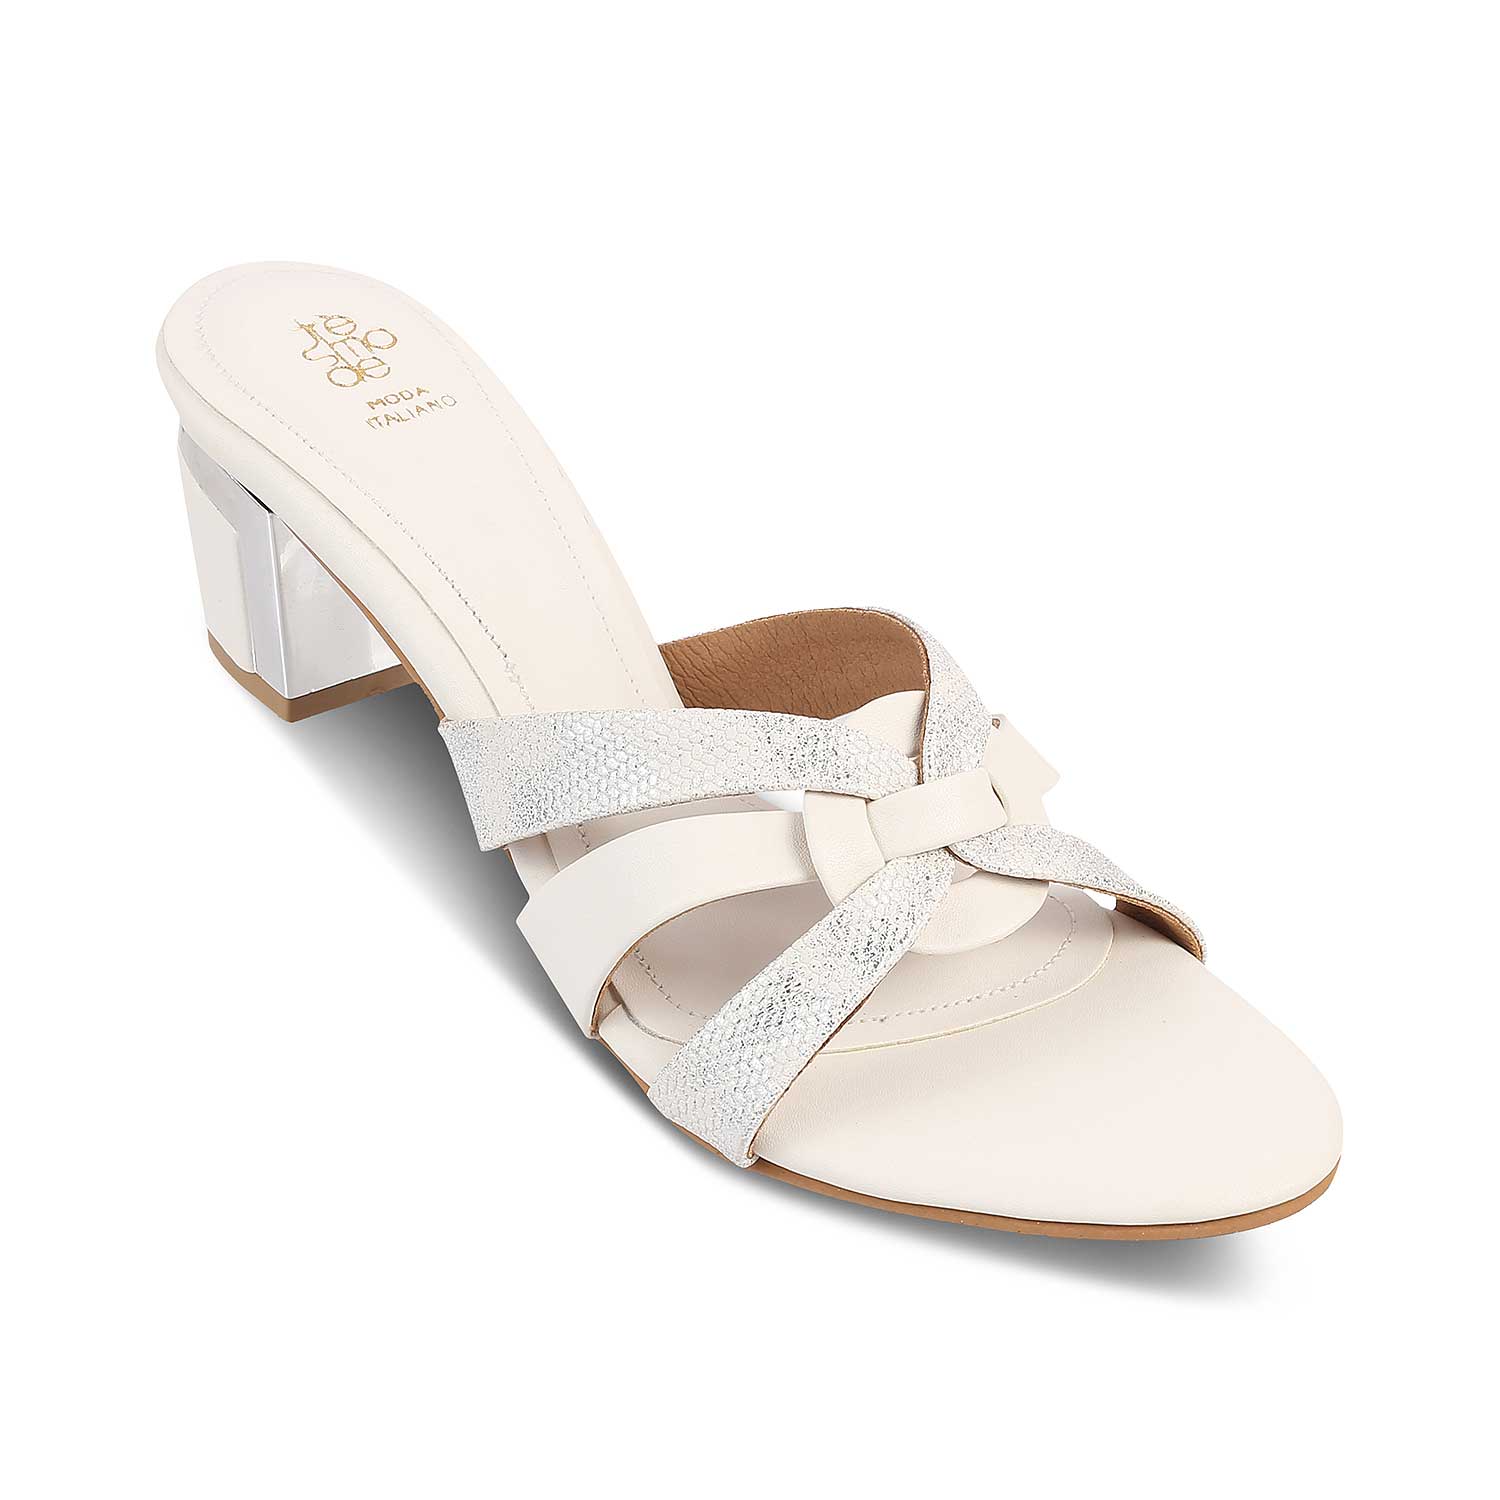 The Elche White Women's Dress Block Heel Sandals Tresmode - Tresmode